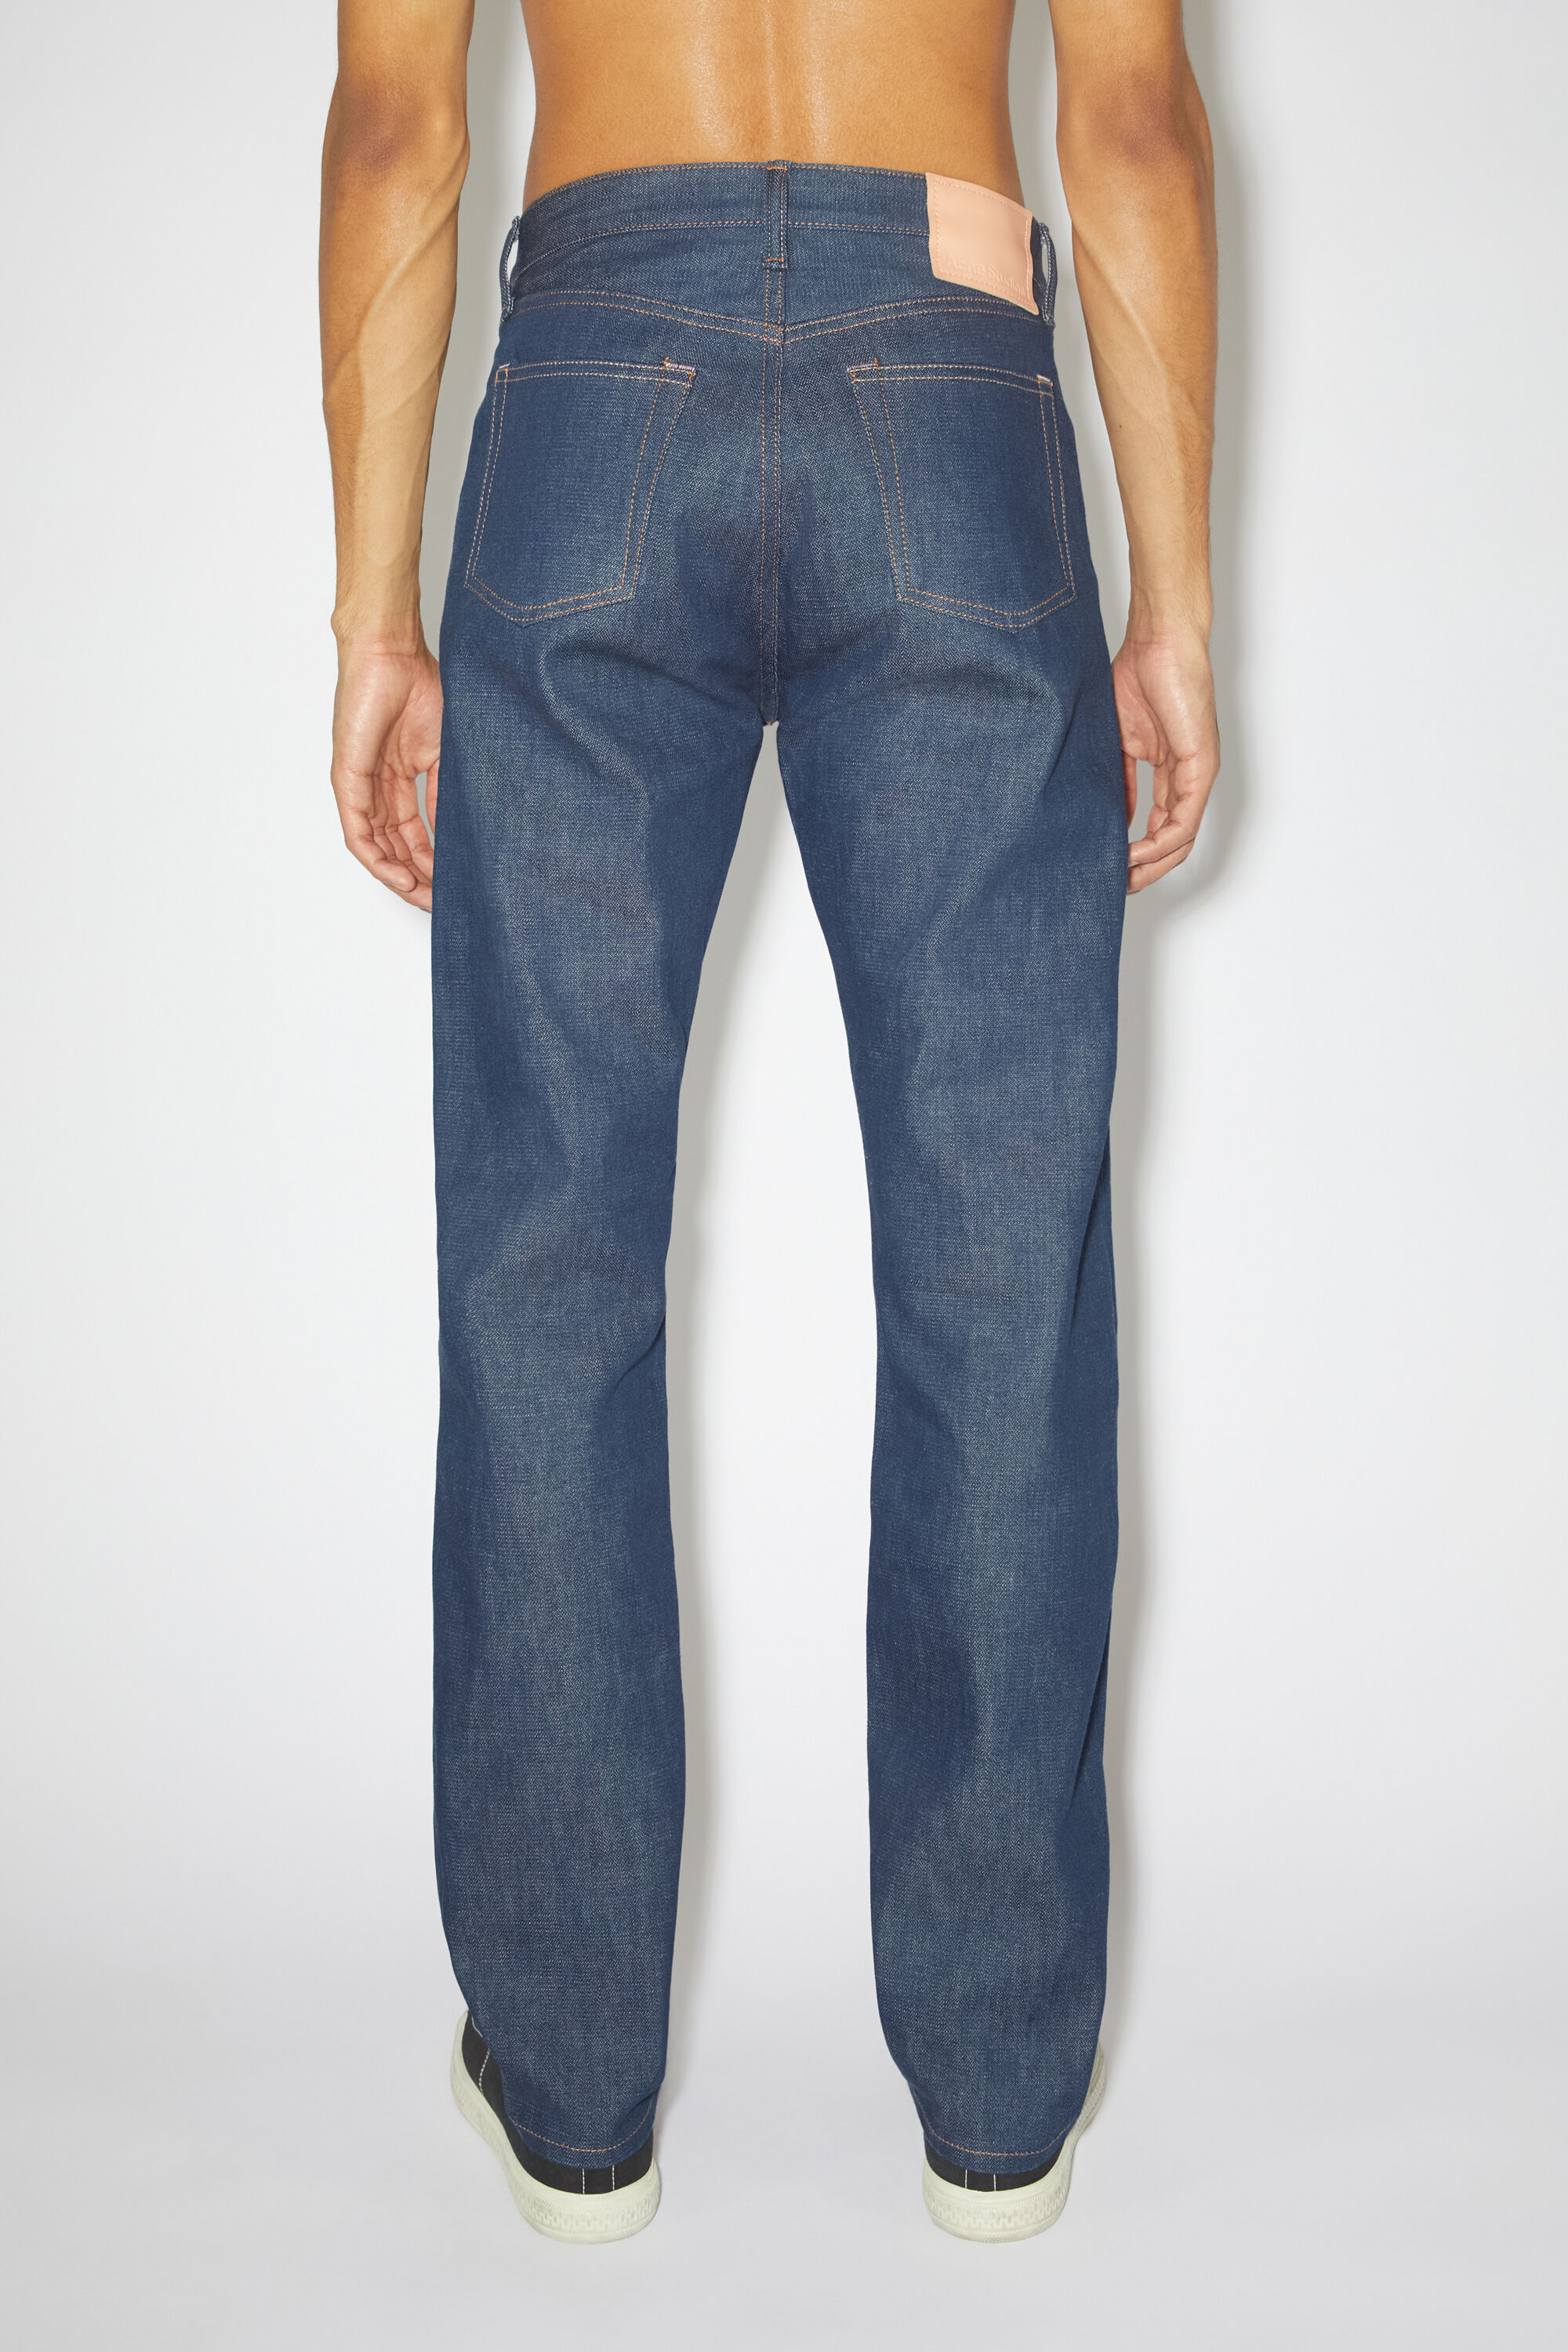 아크네 스튜디오 Acne Studios Regular fit jeans -1996 - Indigo blue